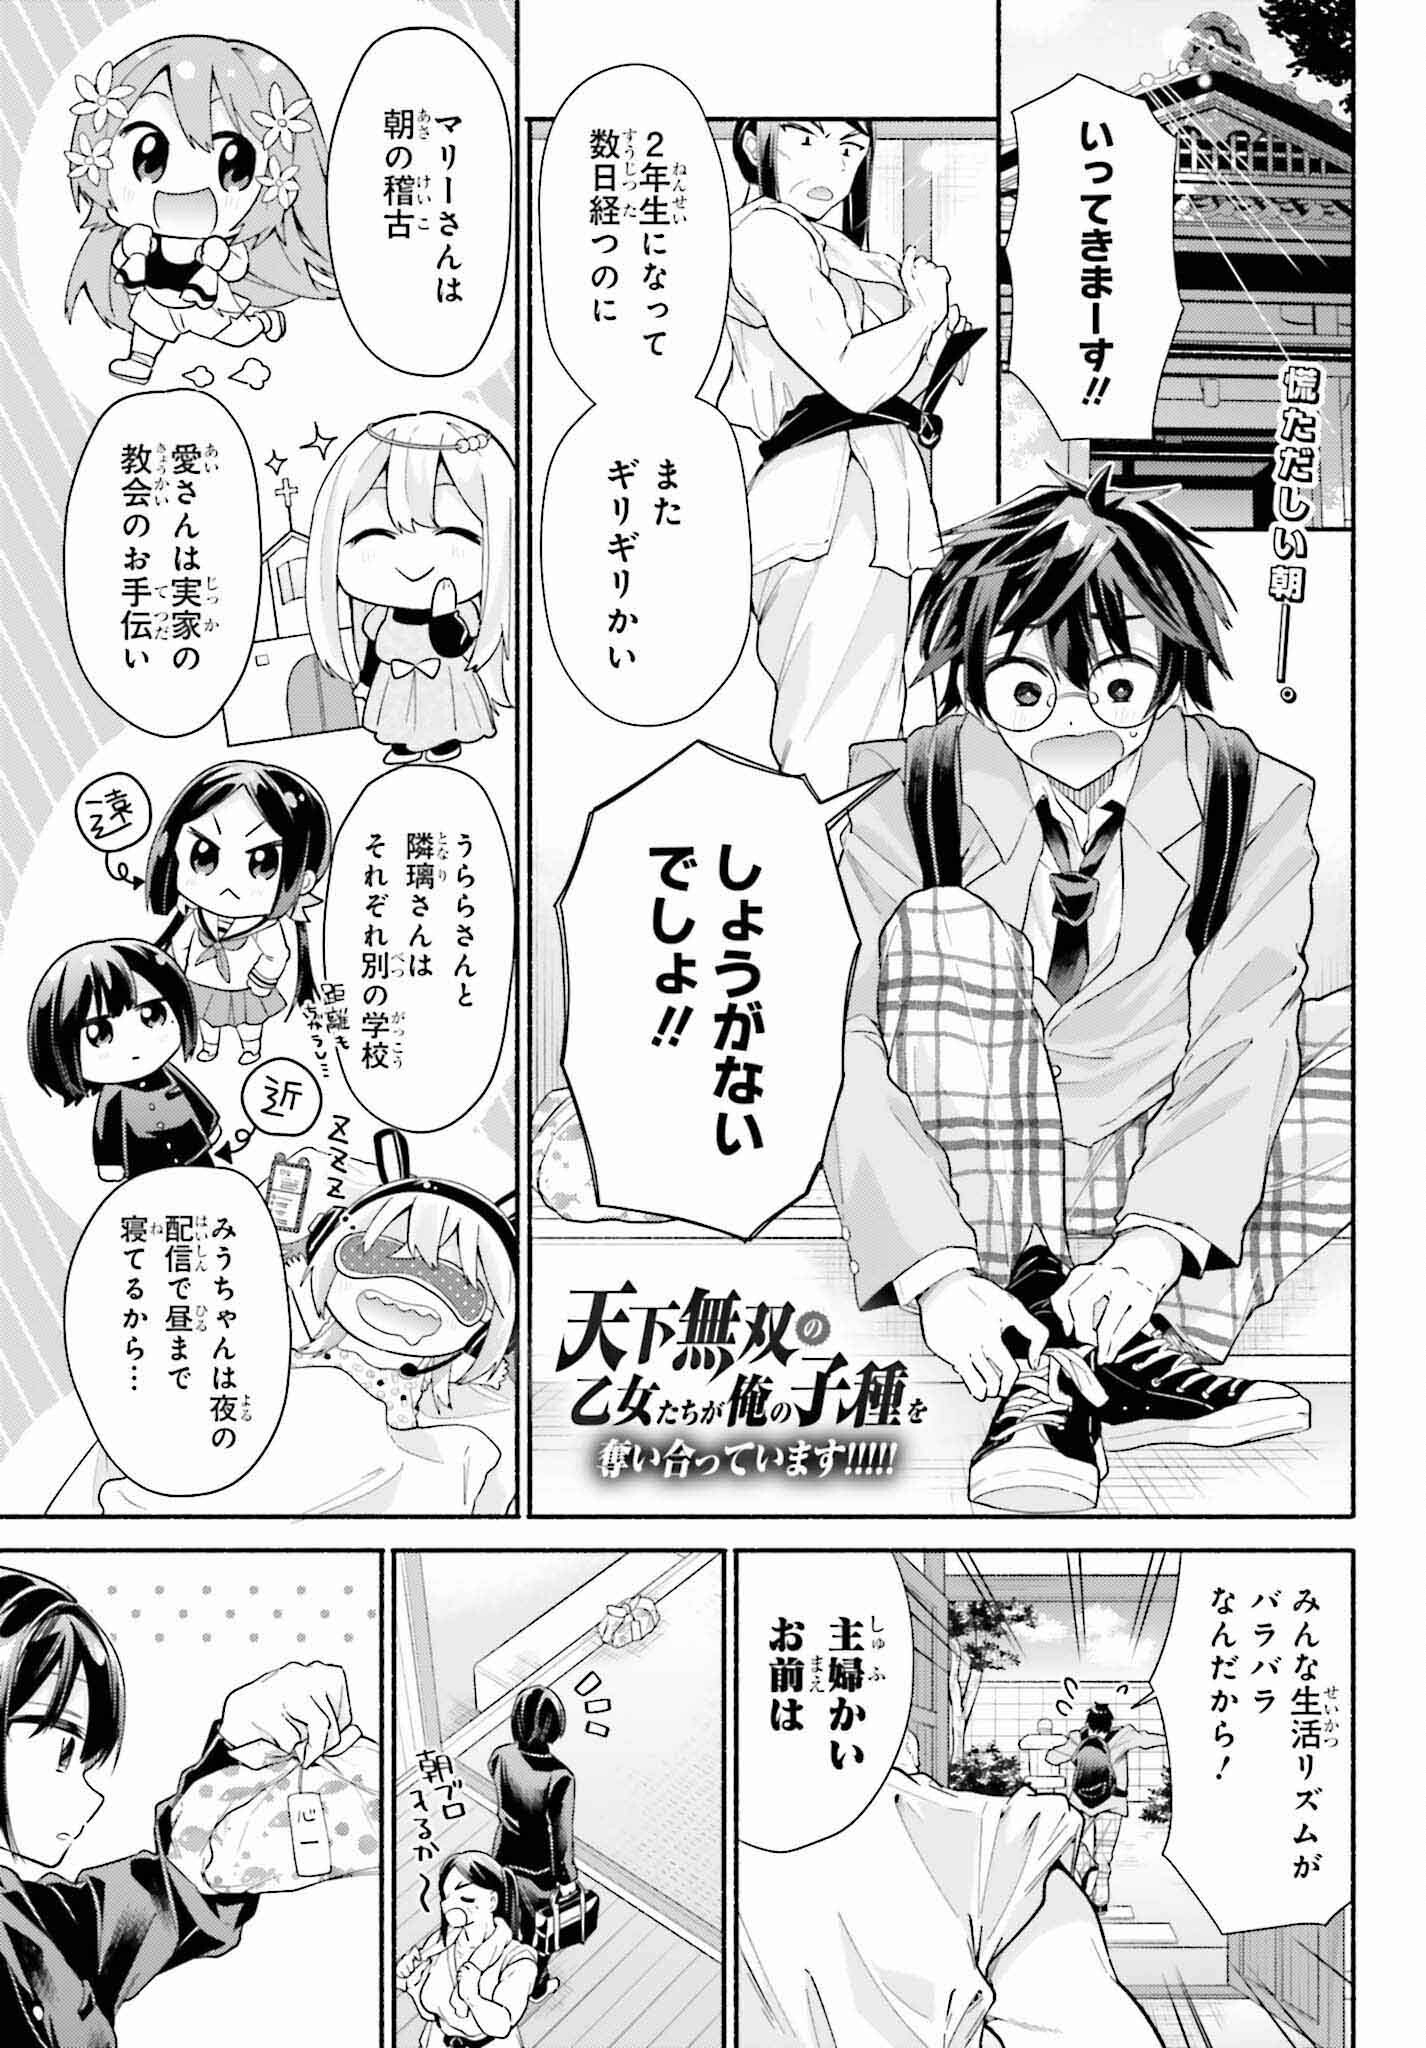 Tenka Musou no Otome-tachi ga Ore no Kodane wo Ubaiatteimasu!!!!! - Chapter 7 - Page 1